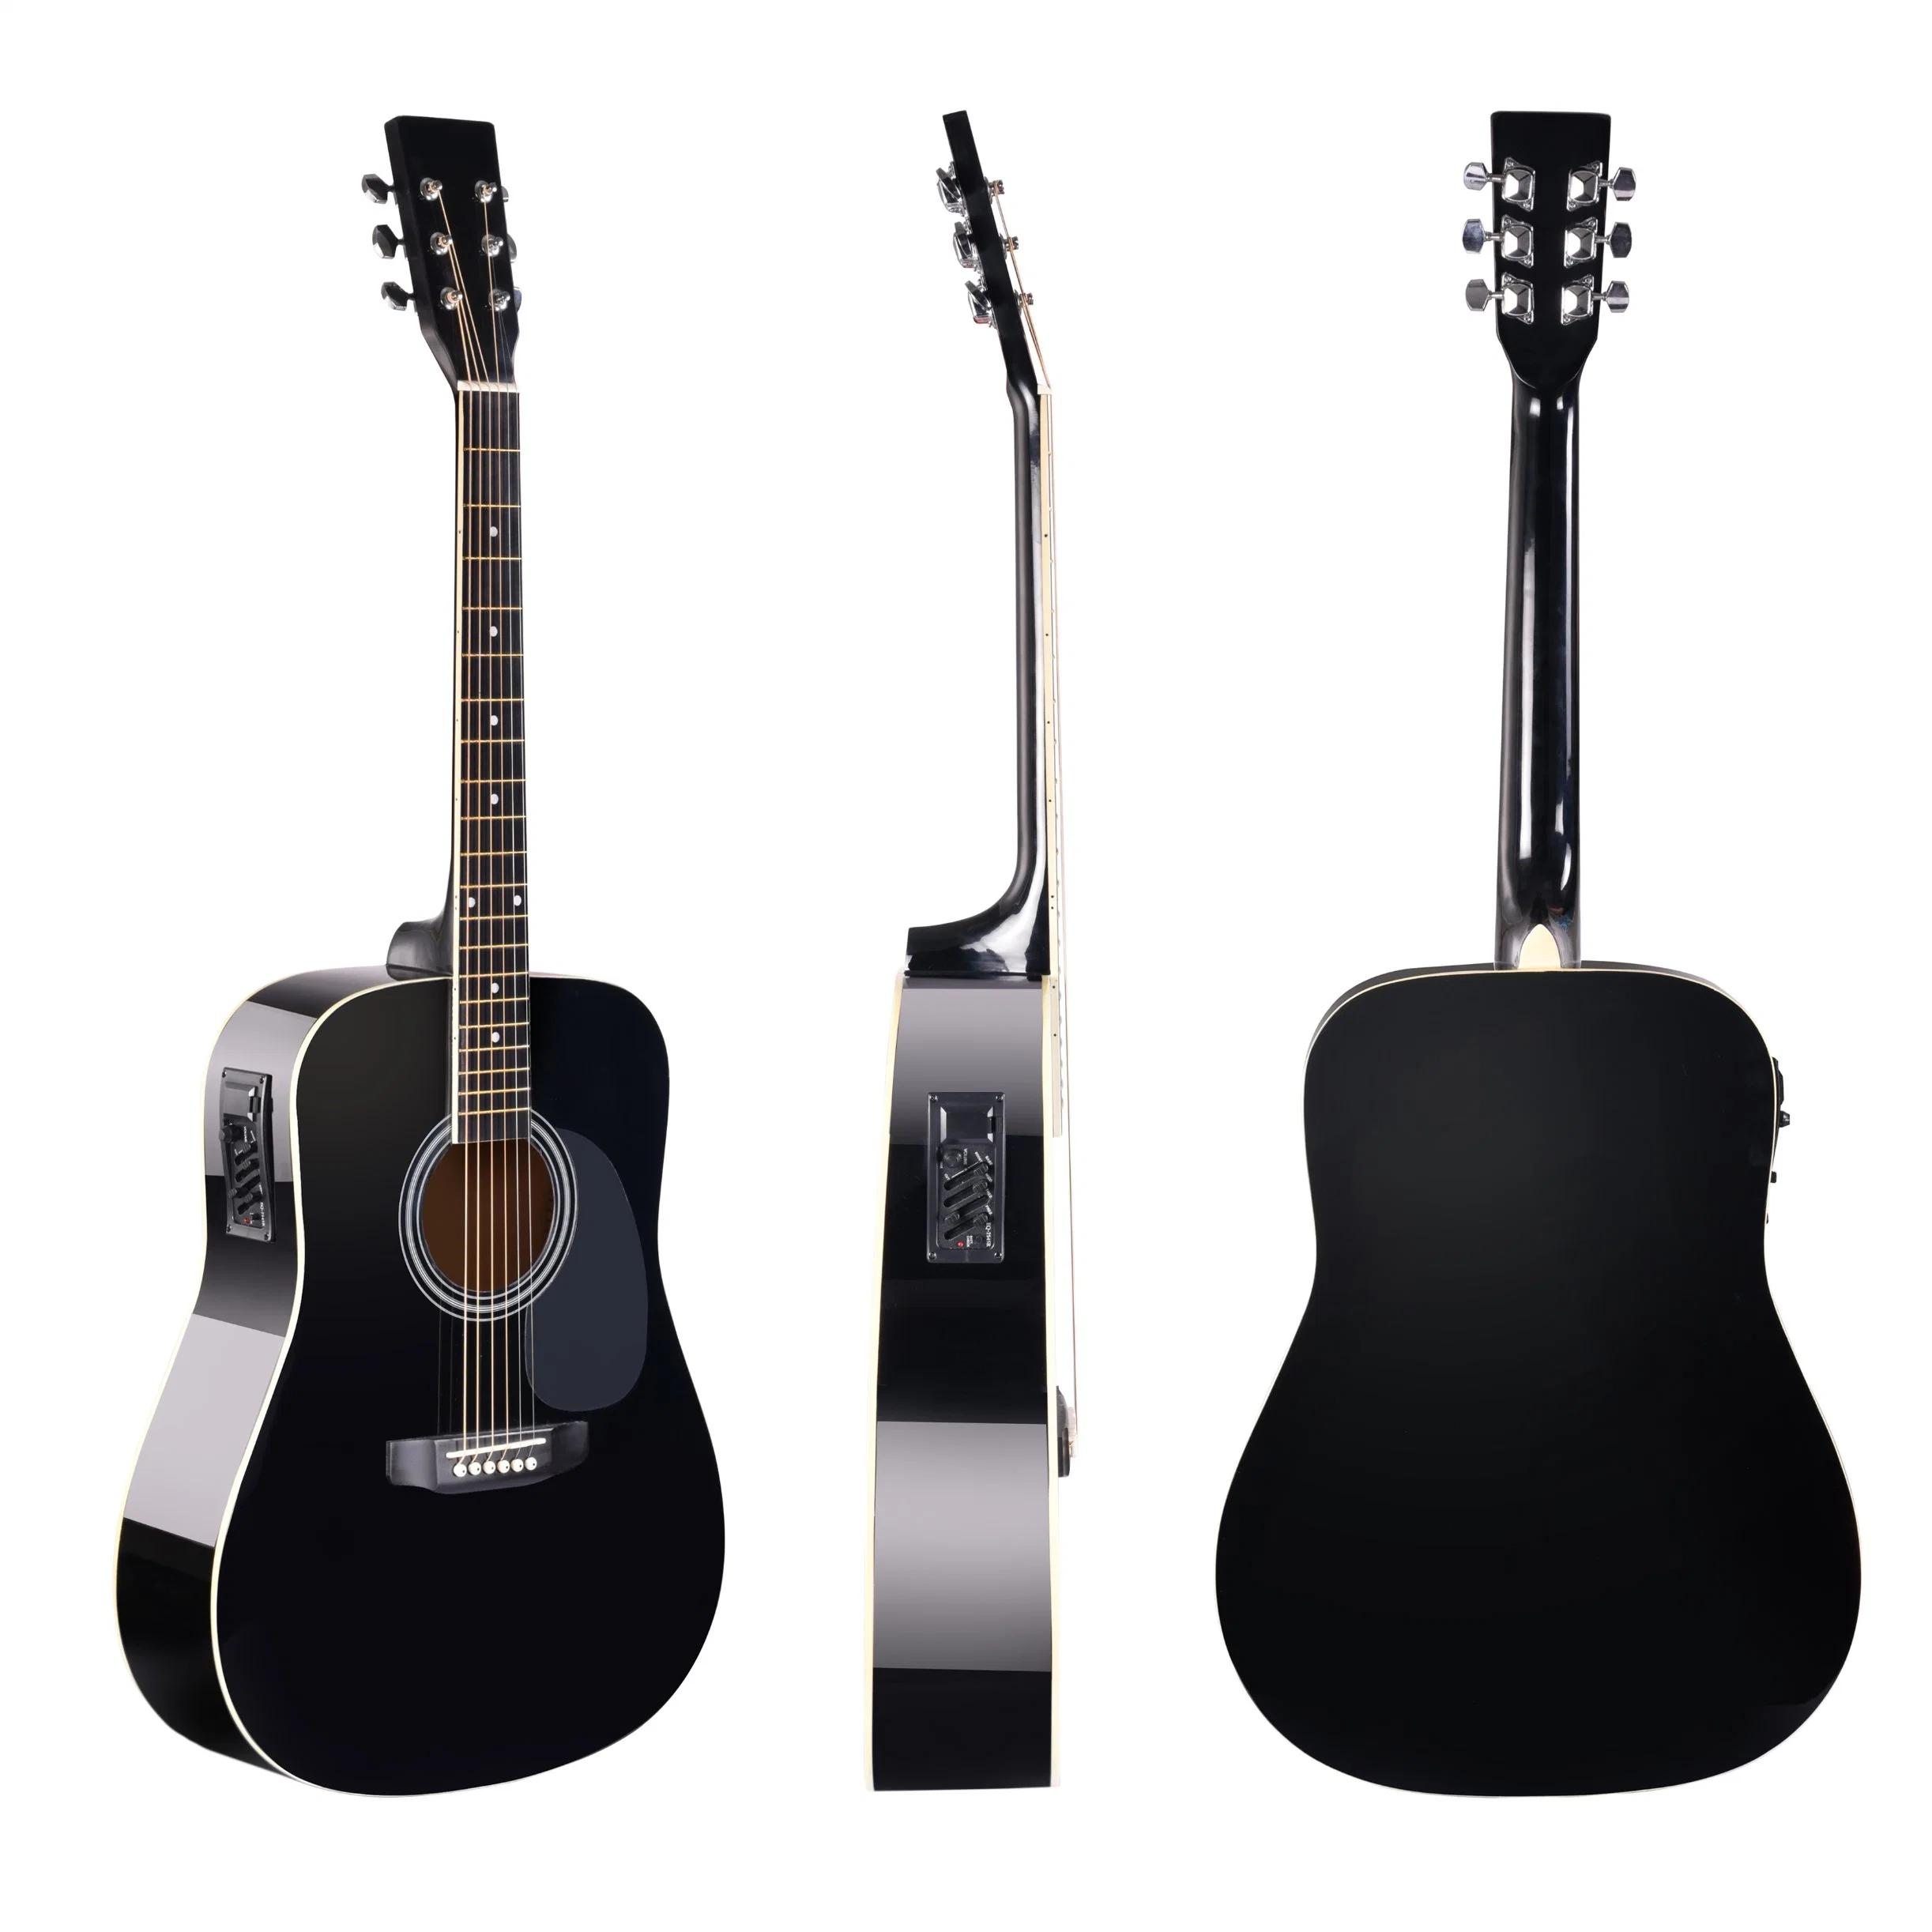 Fa209tce Китайская фабрика HandMade хорошее качество Acoustic Guitar Самая низкая гитара Для начинающих